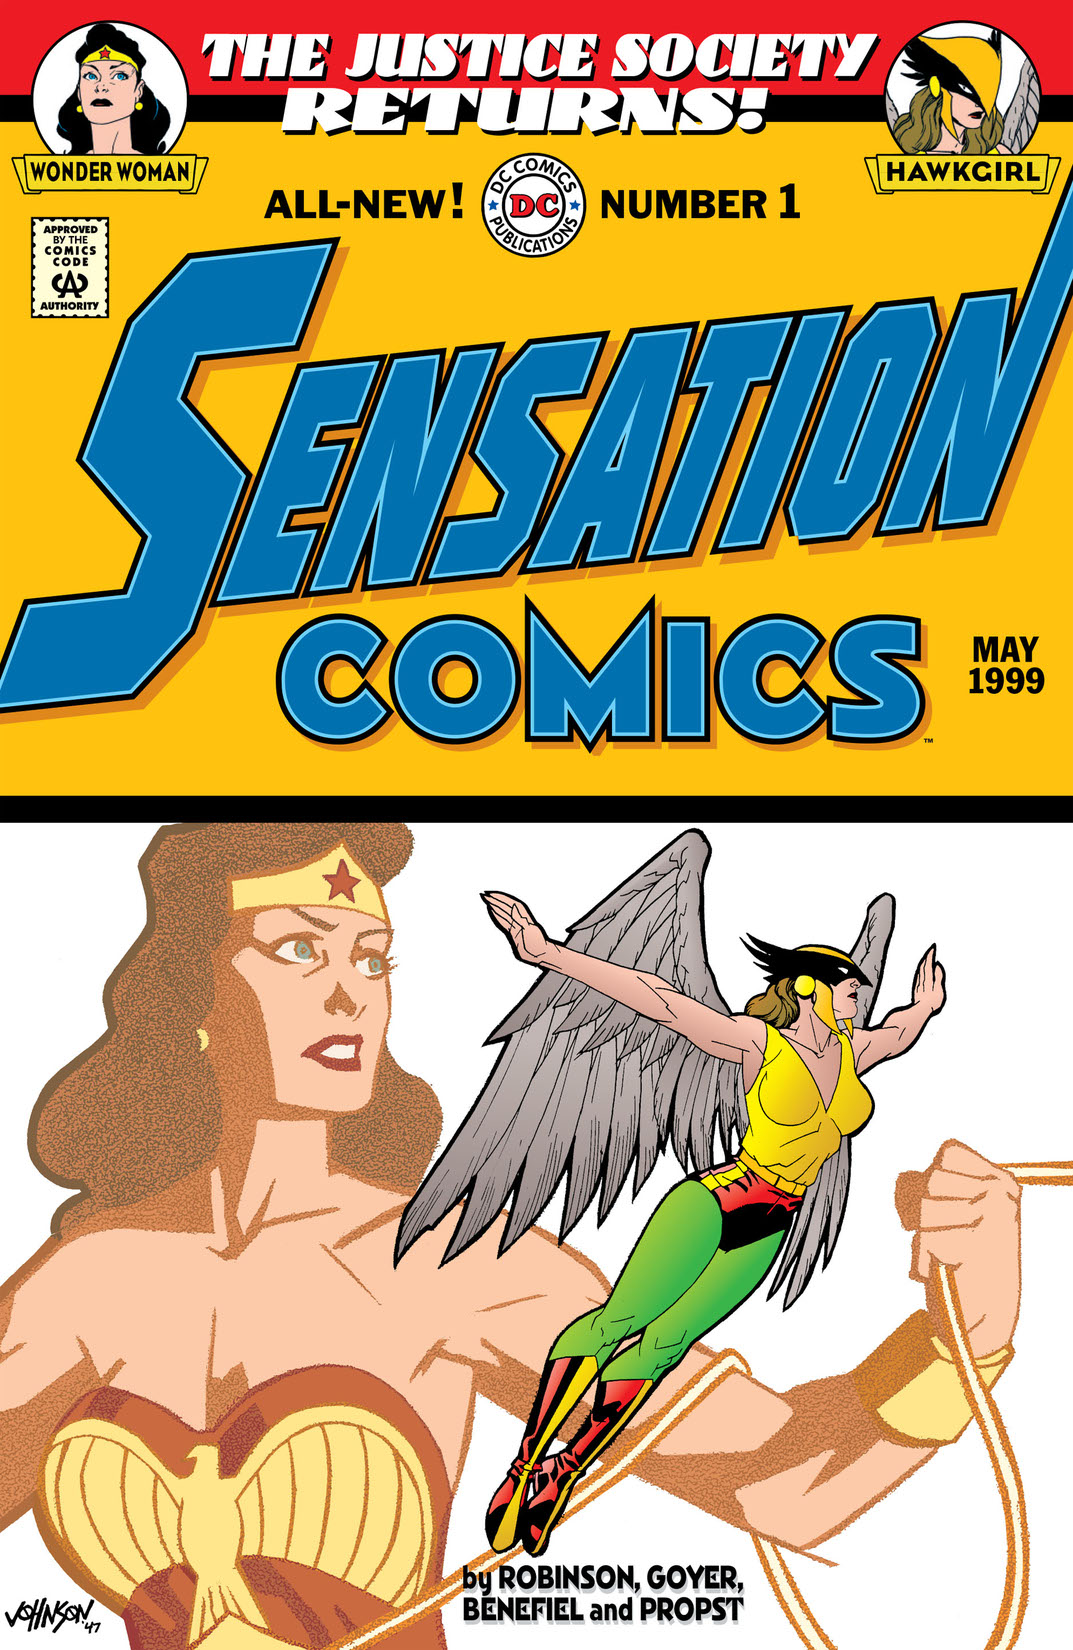 Sensation Comics #1 preview images